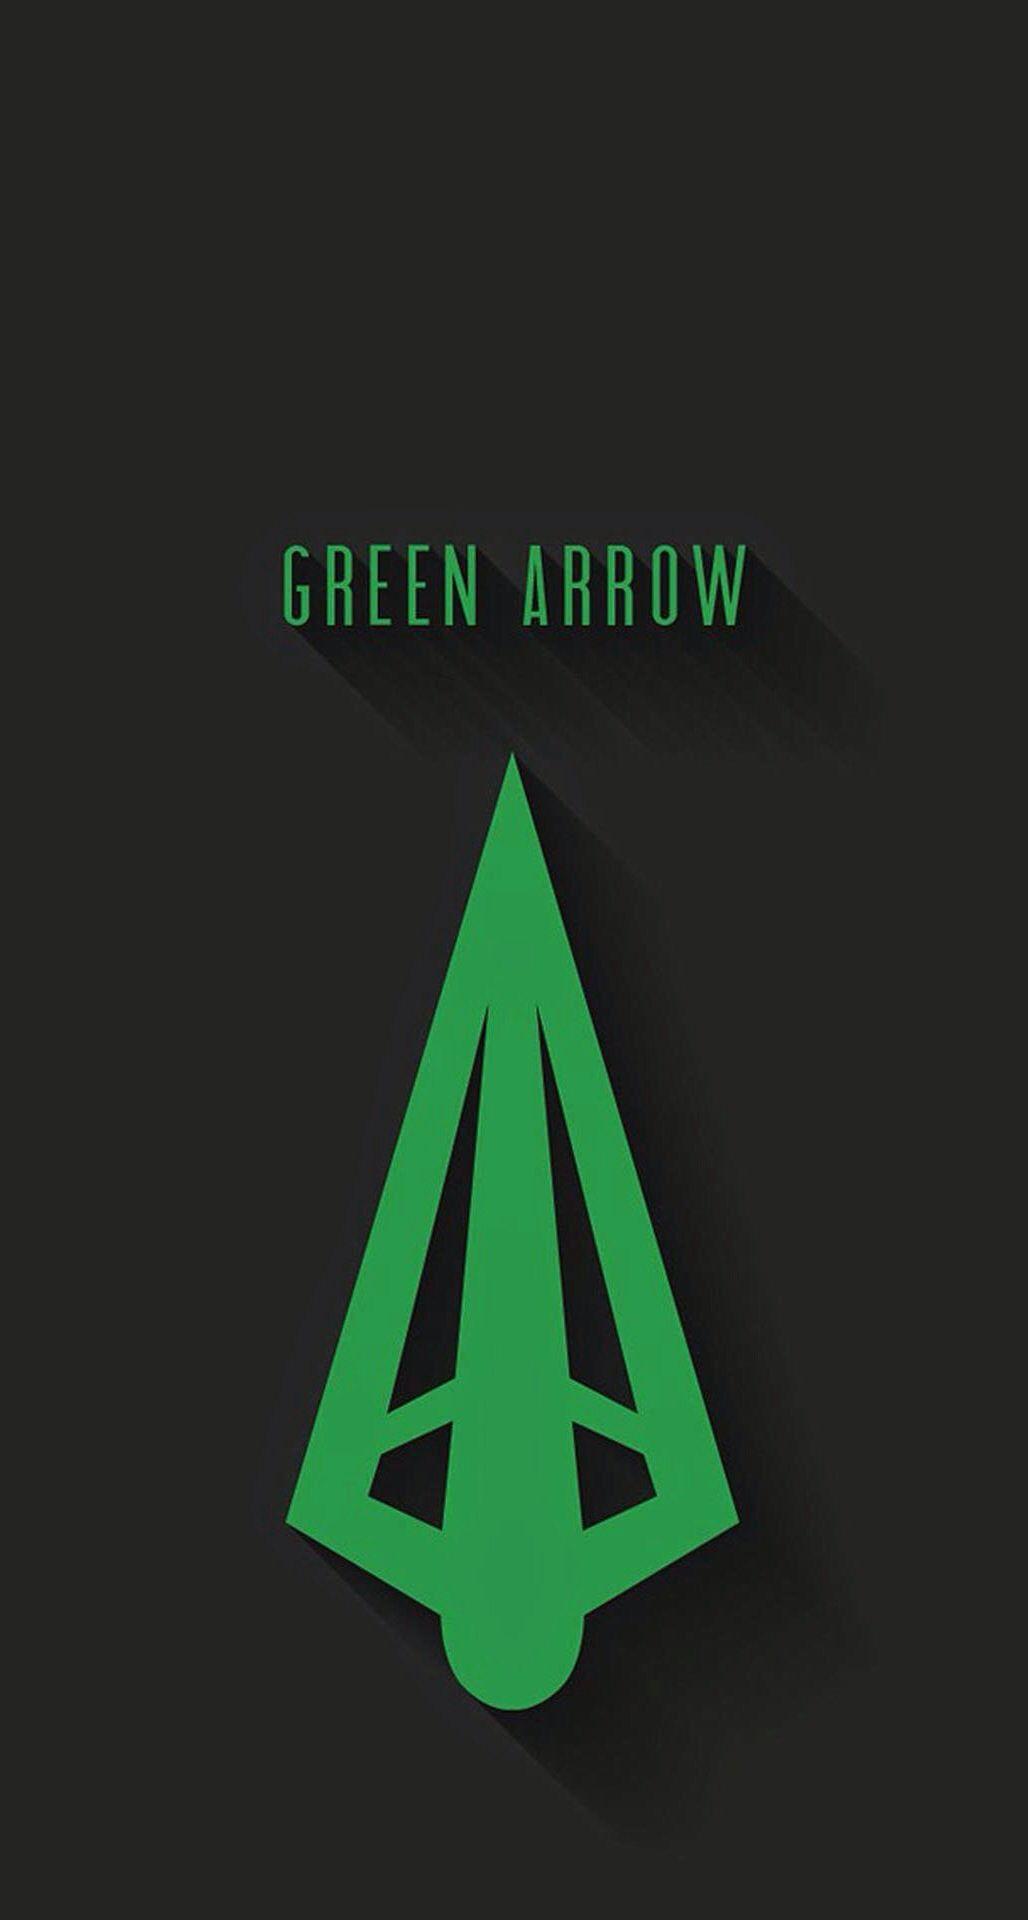 Minimalist Green Arrow iPhone Wallpaper Free Minimalist Green Arrow iPhone Background